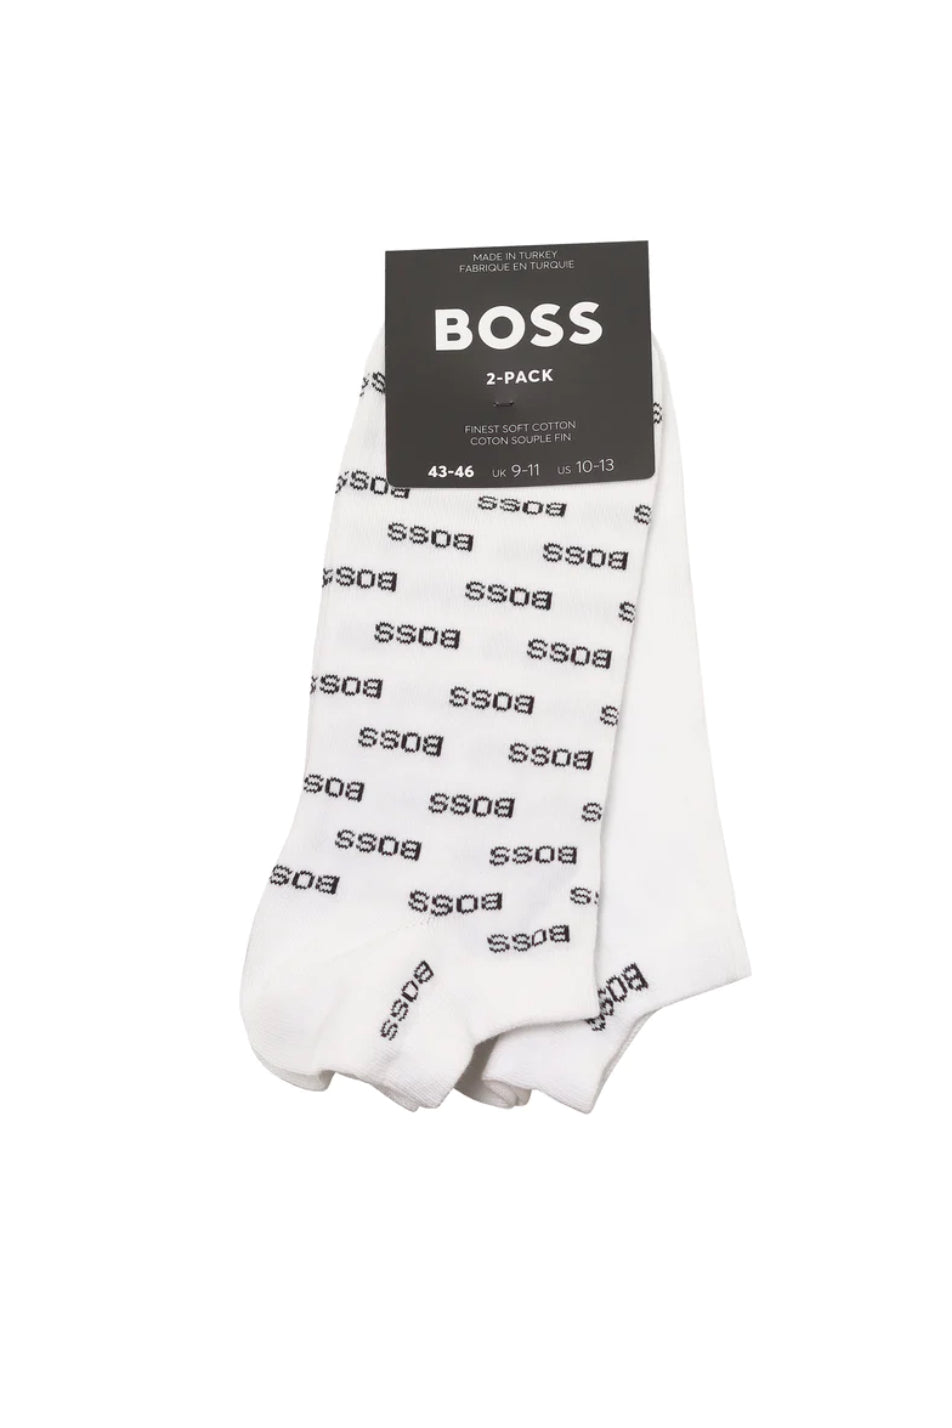 BOSS 2 Pack Men's Allover Sock